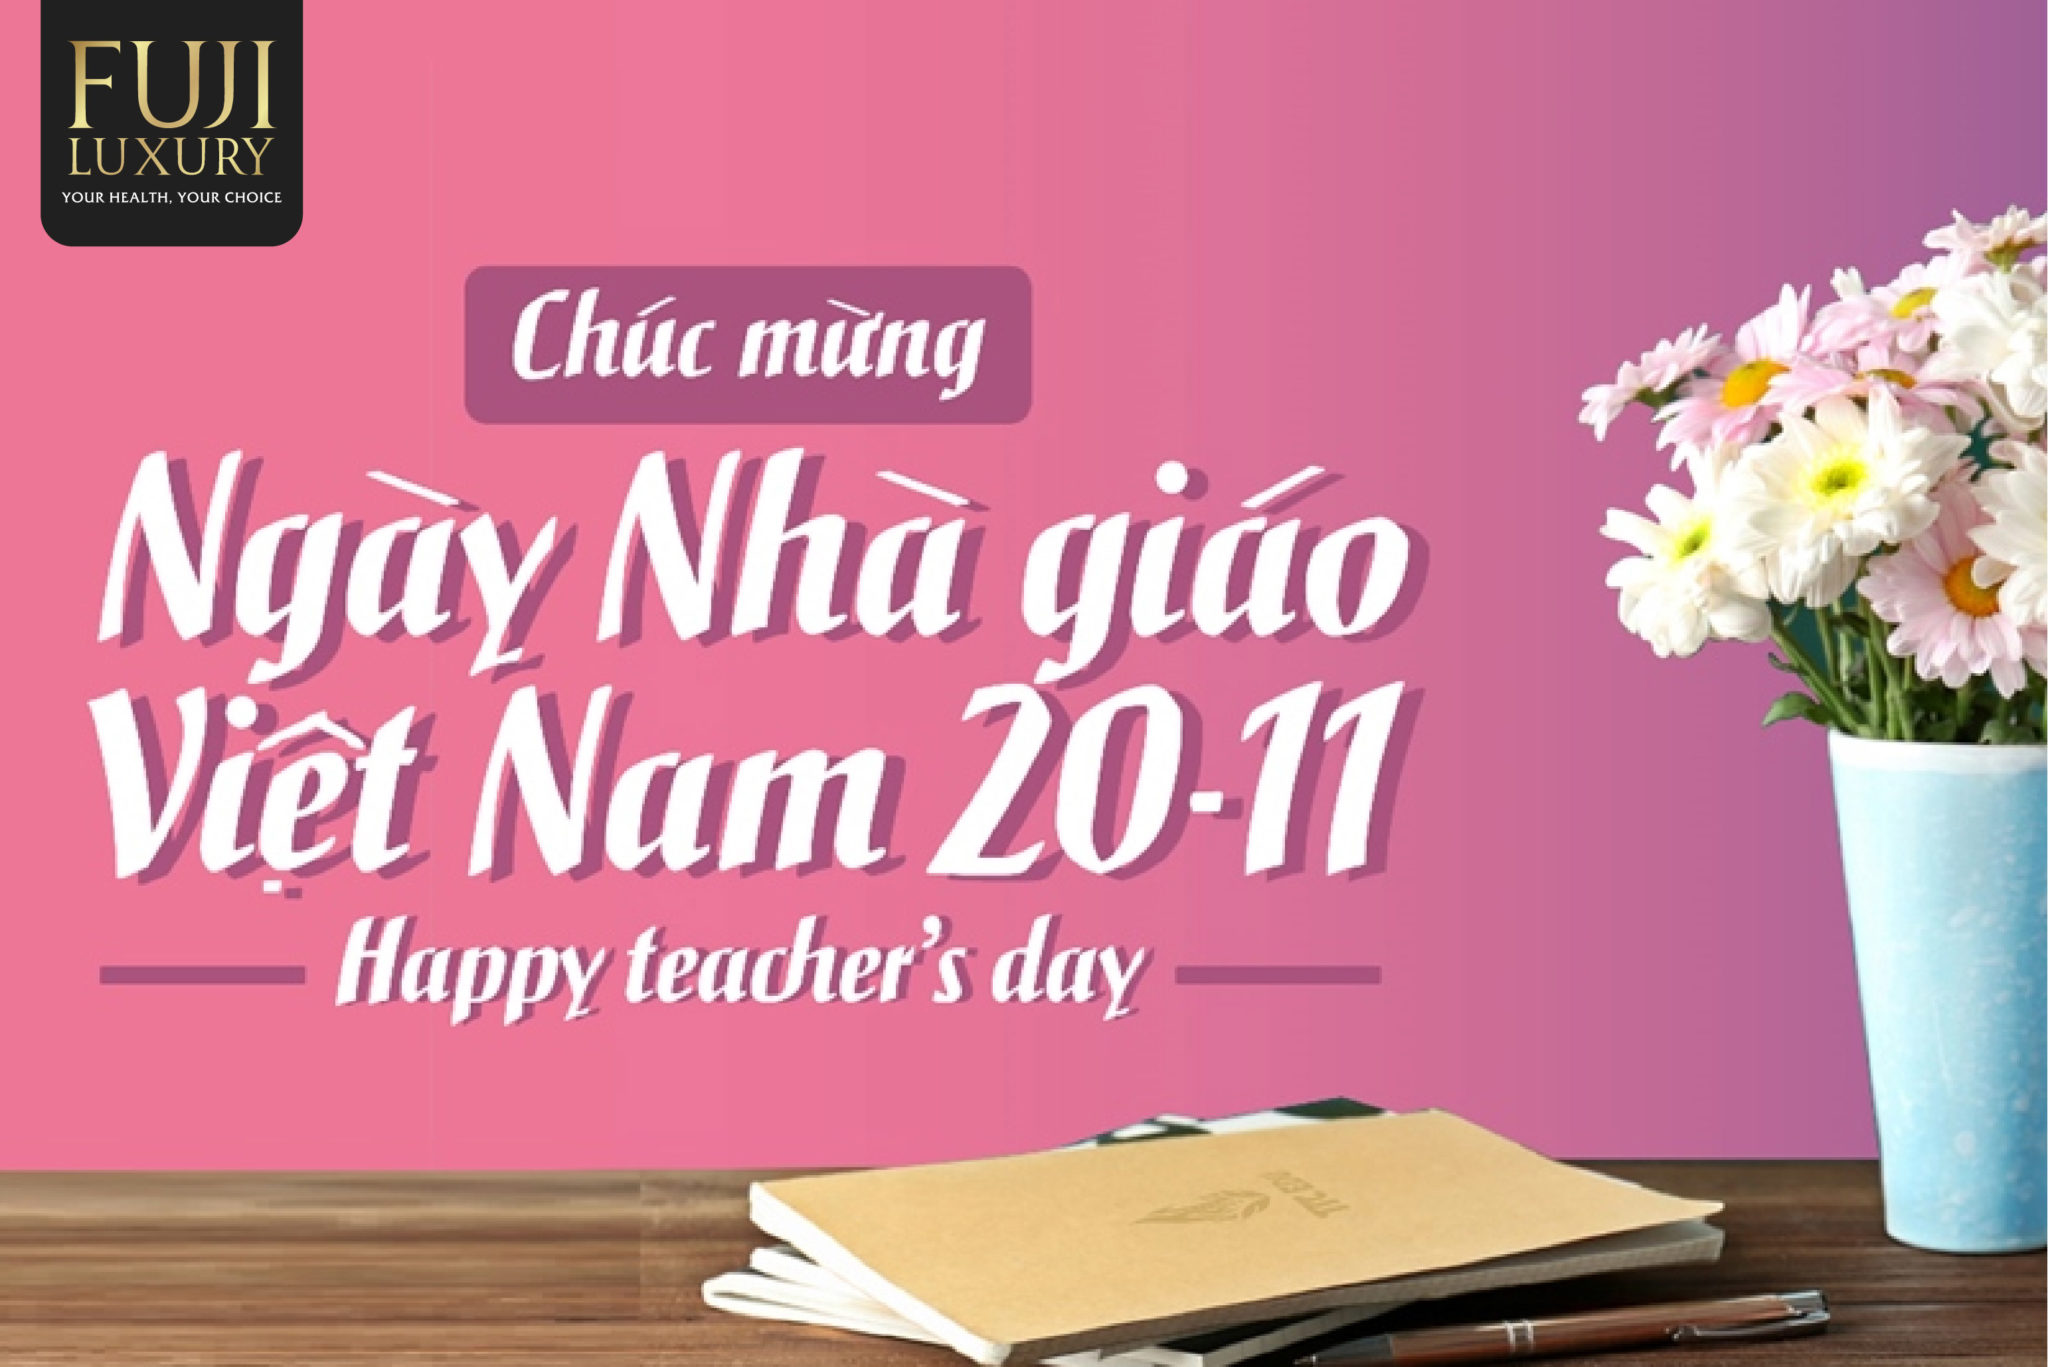 Ngày nhà giáo Việt Nam là ngày để các học sinh hướng tới tri ân, bày tỏ tình cảm với thầy cô